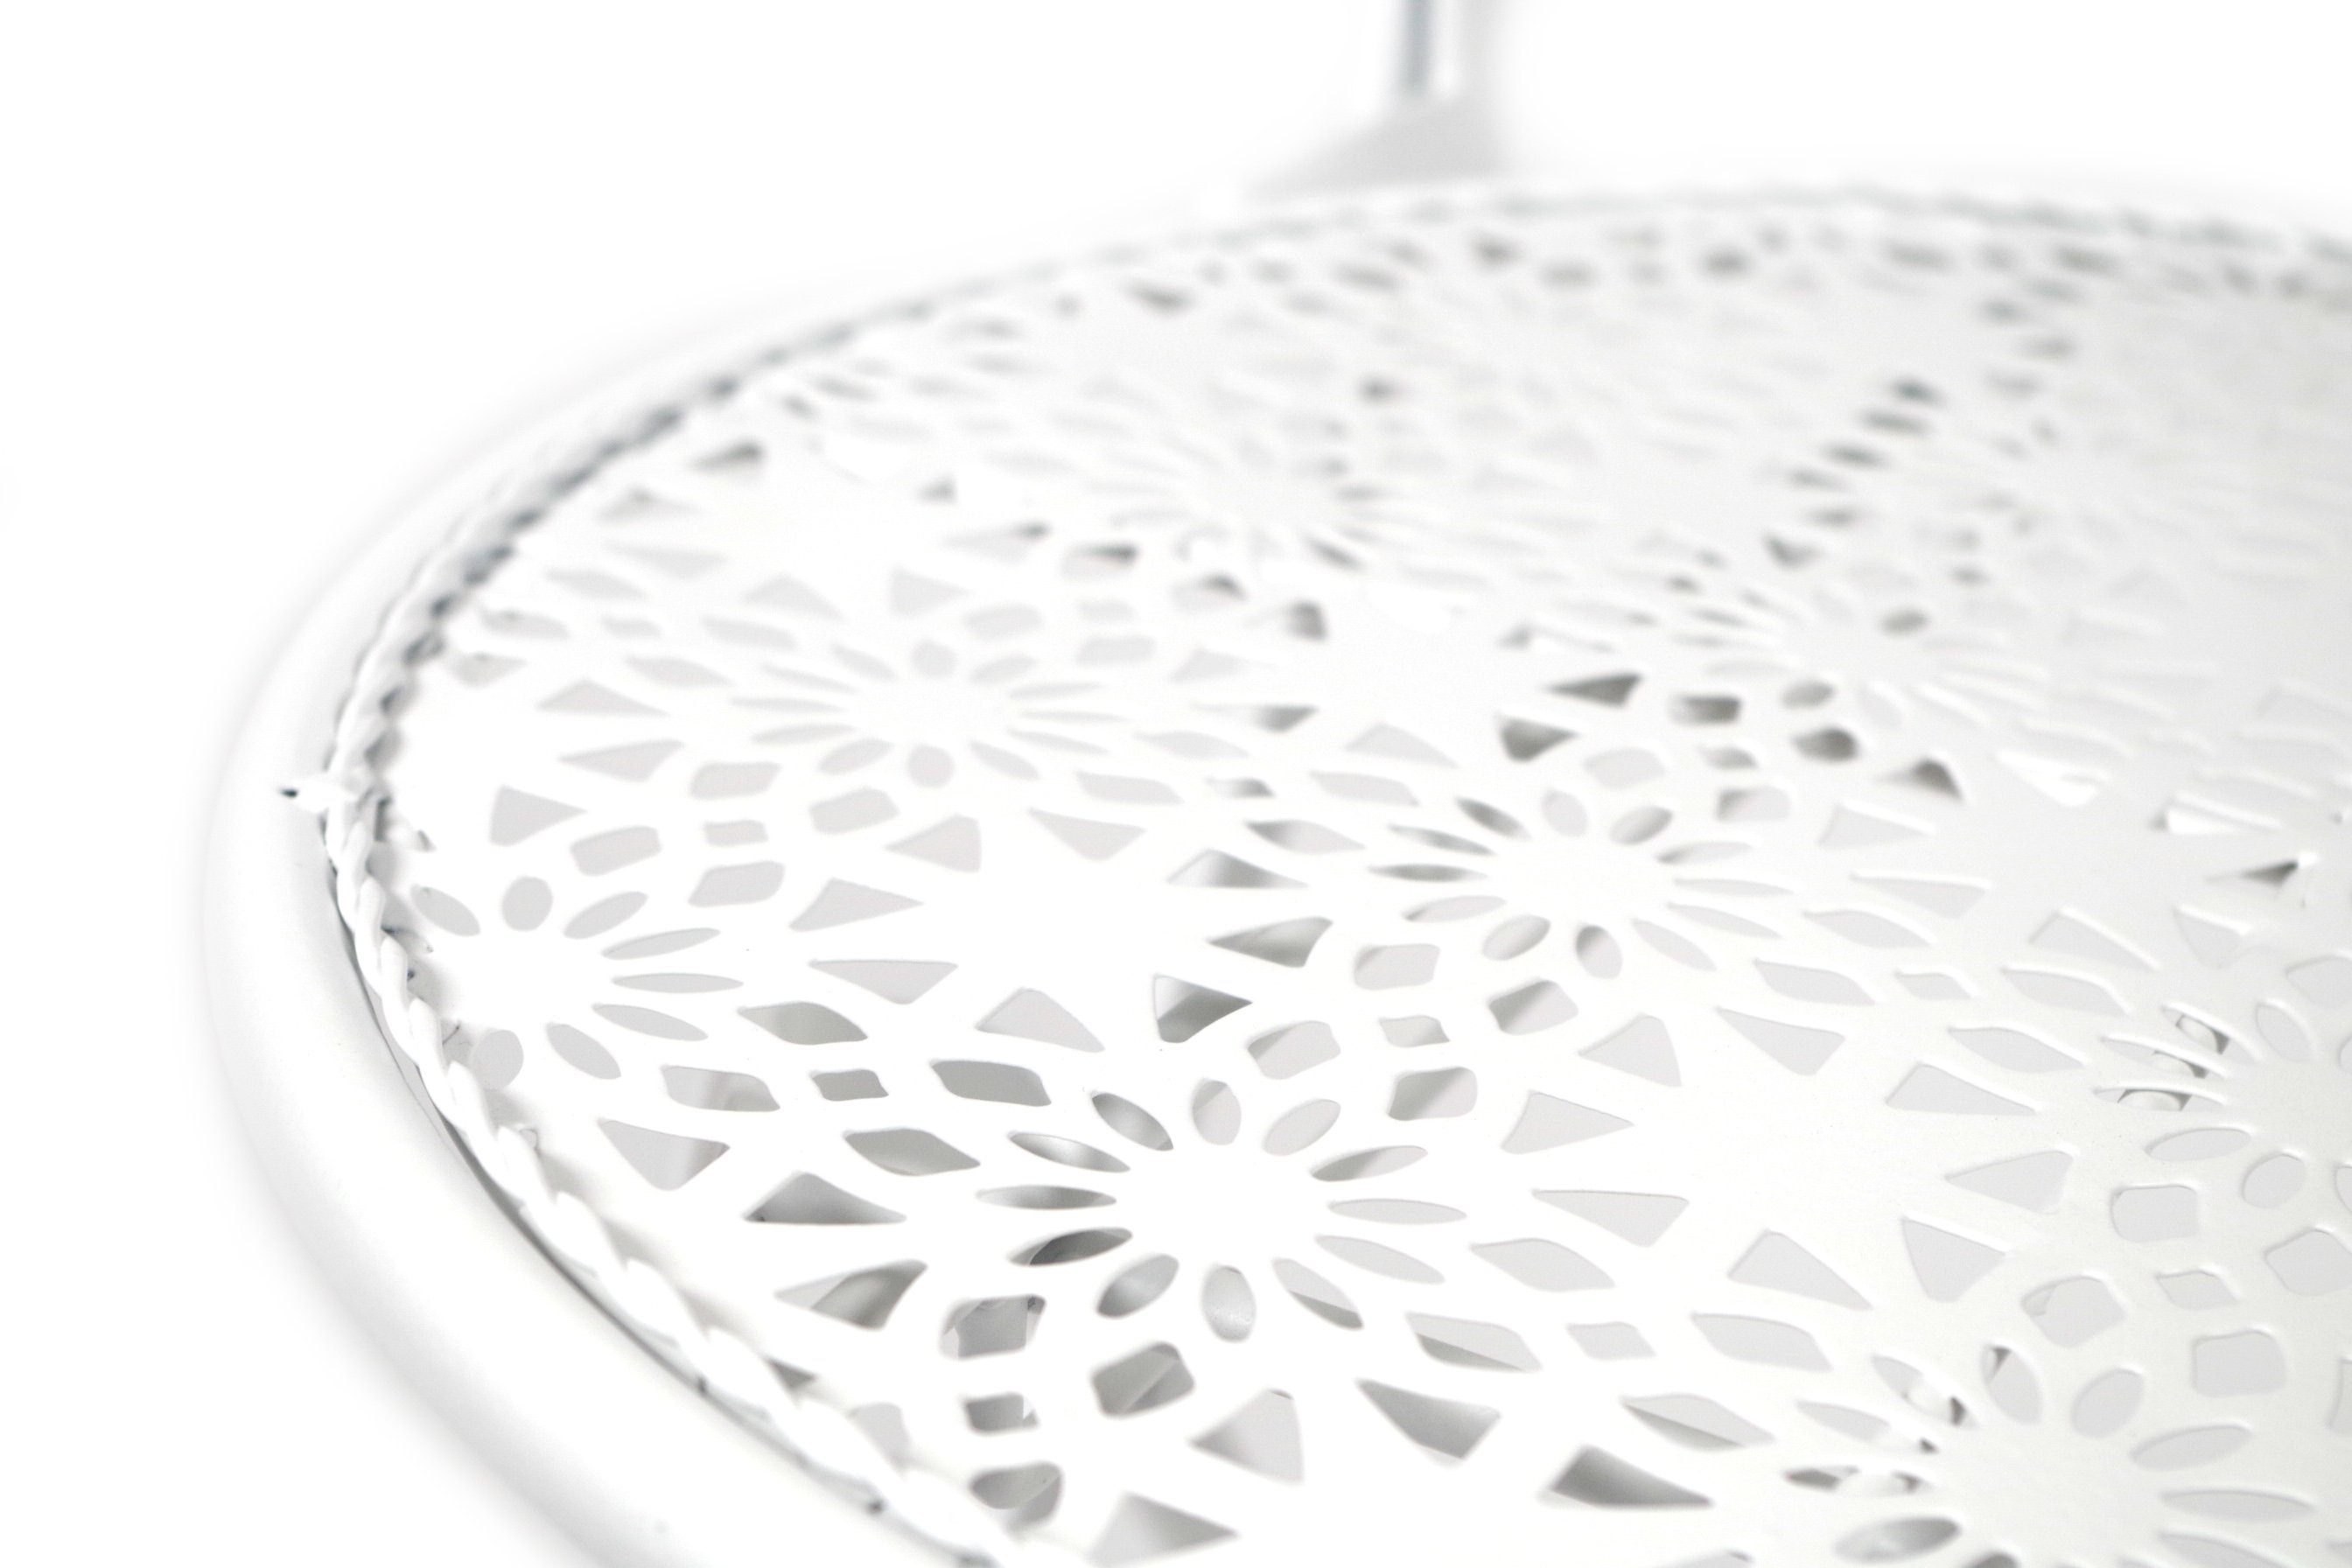 Kobolo 4-Fußstuhl Klappstuhl aus H verfügbar, der St) in Farbe Metall 1 cm (Tisch 94 weiß